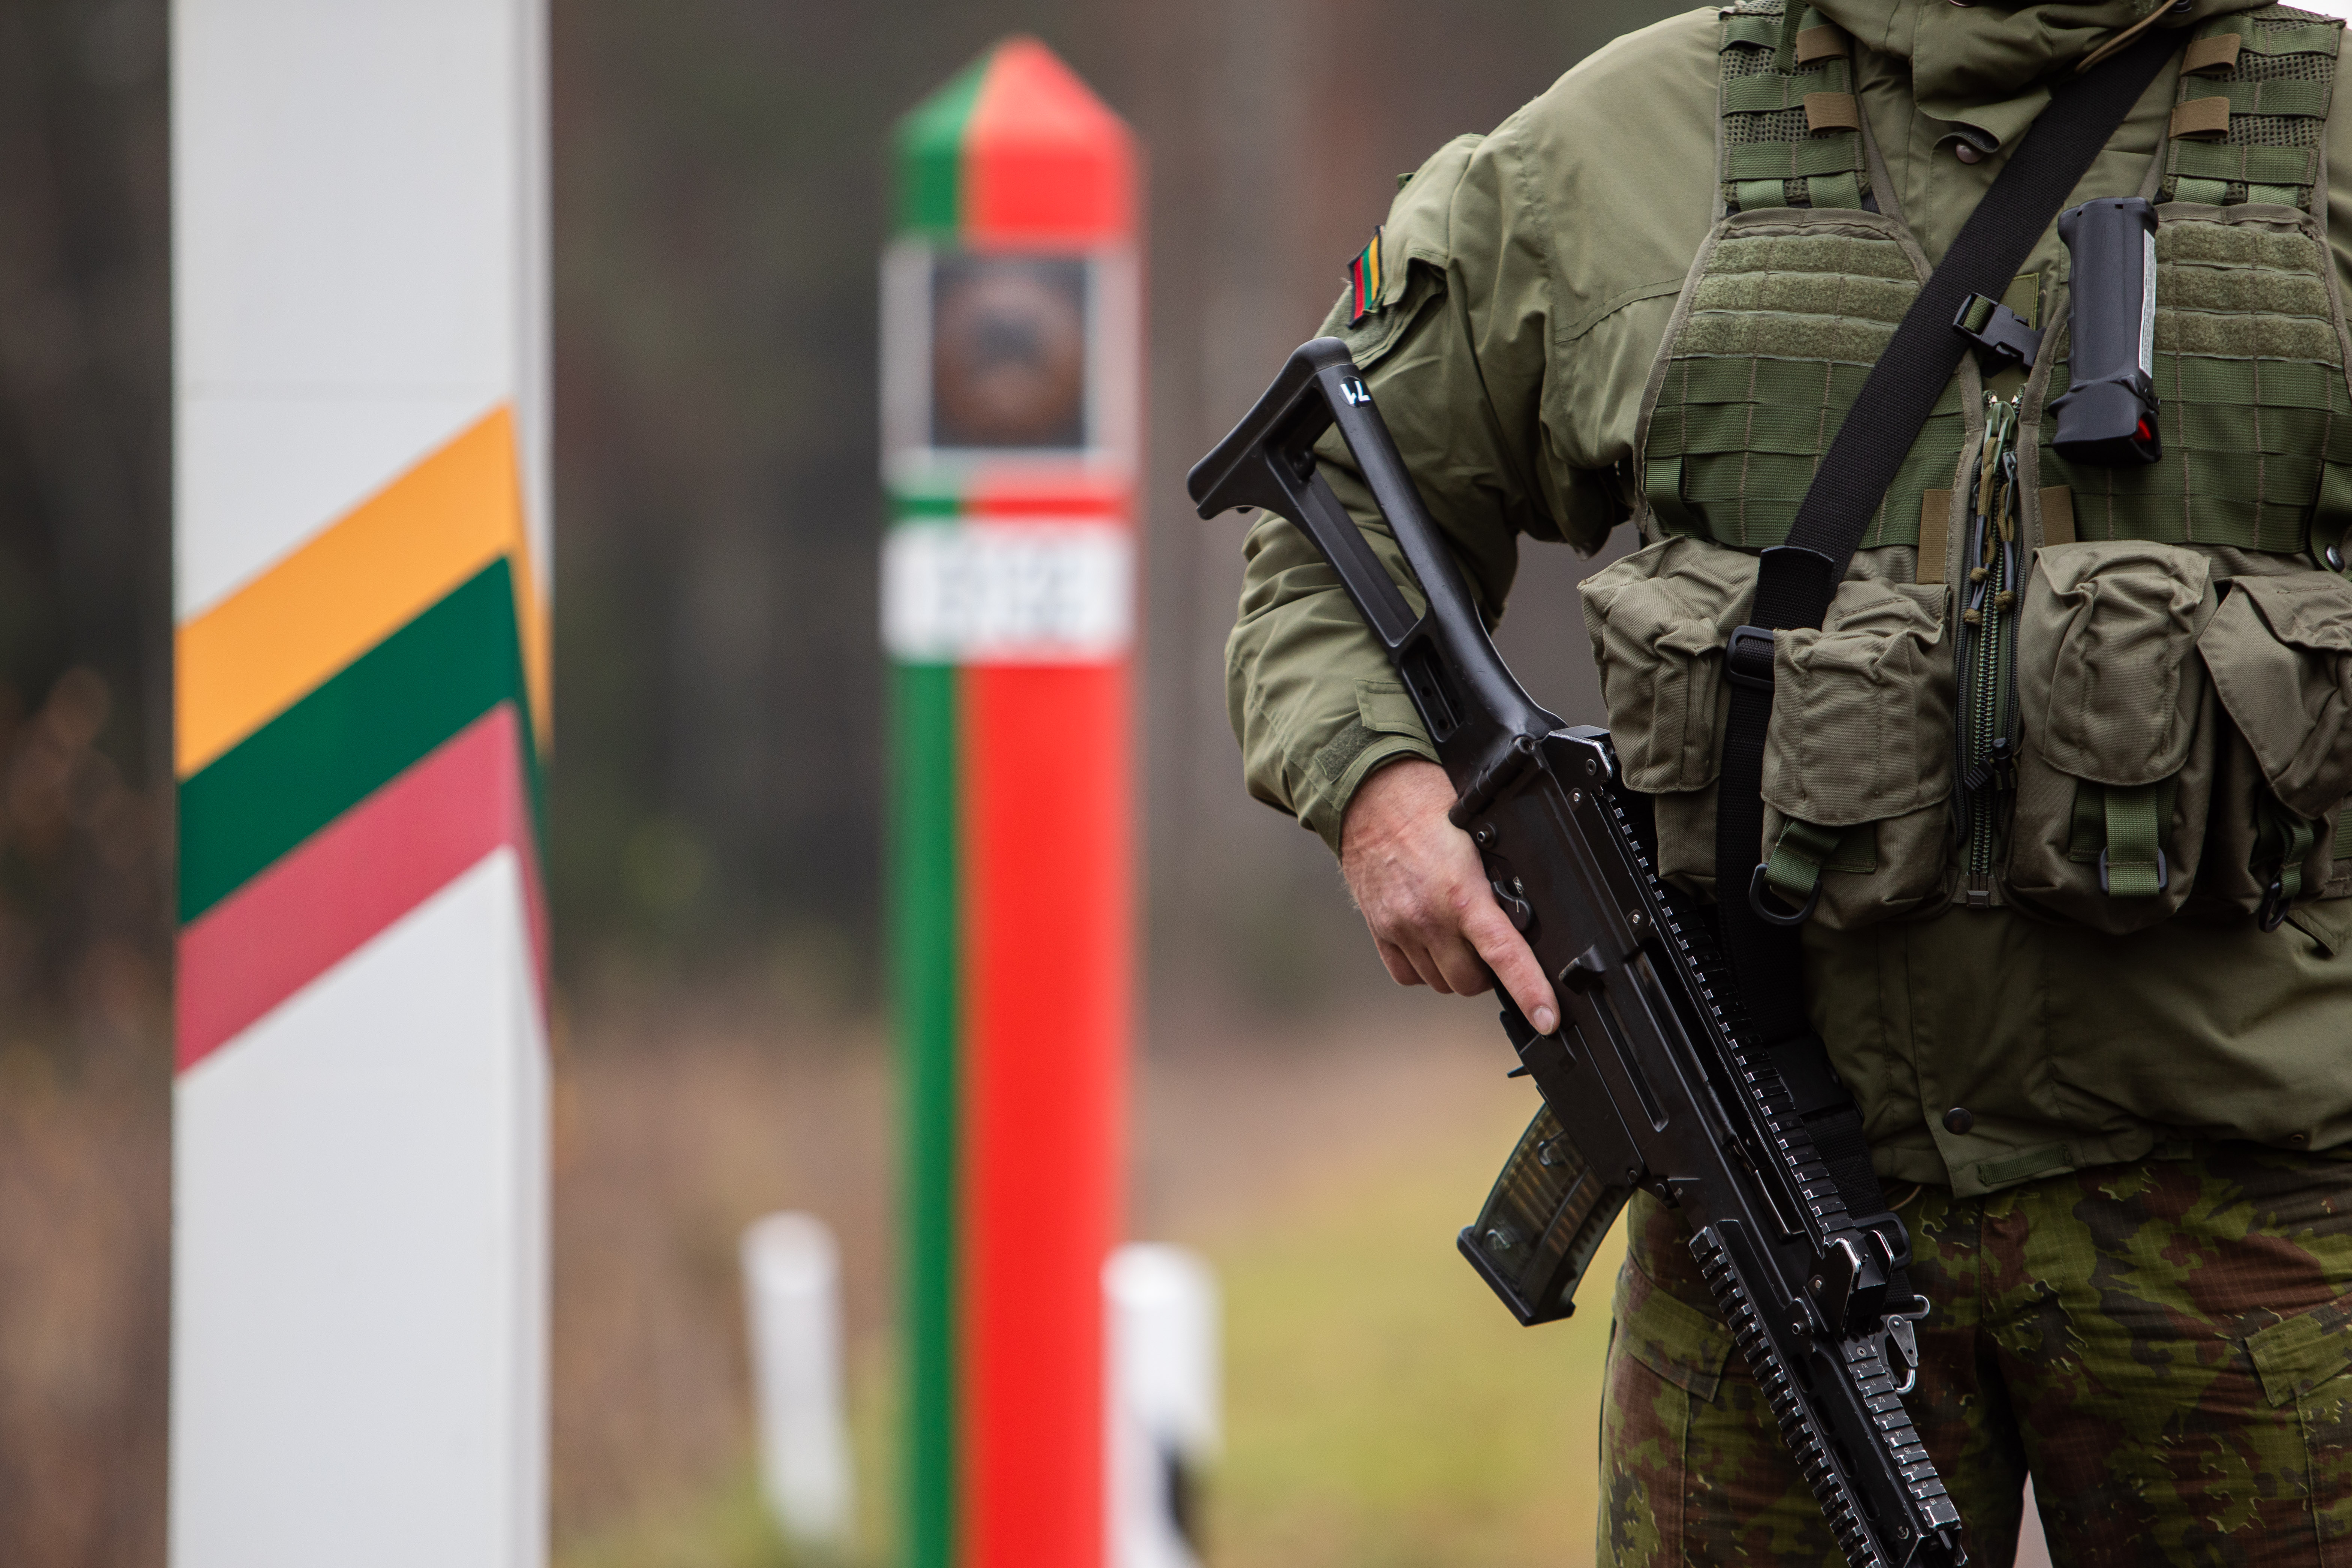 Lietuvos ir Baltarusijos pasienyje apgręžti 54 nelegalūs migrantai, du įleisti į šalį dėl humanitarinių priežasčių